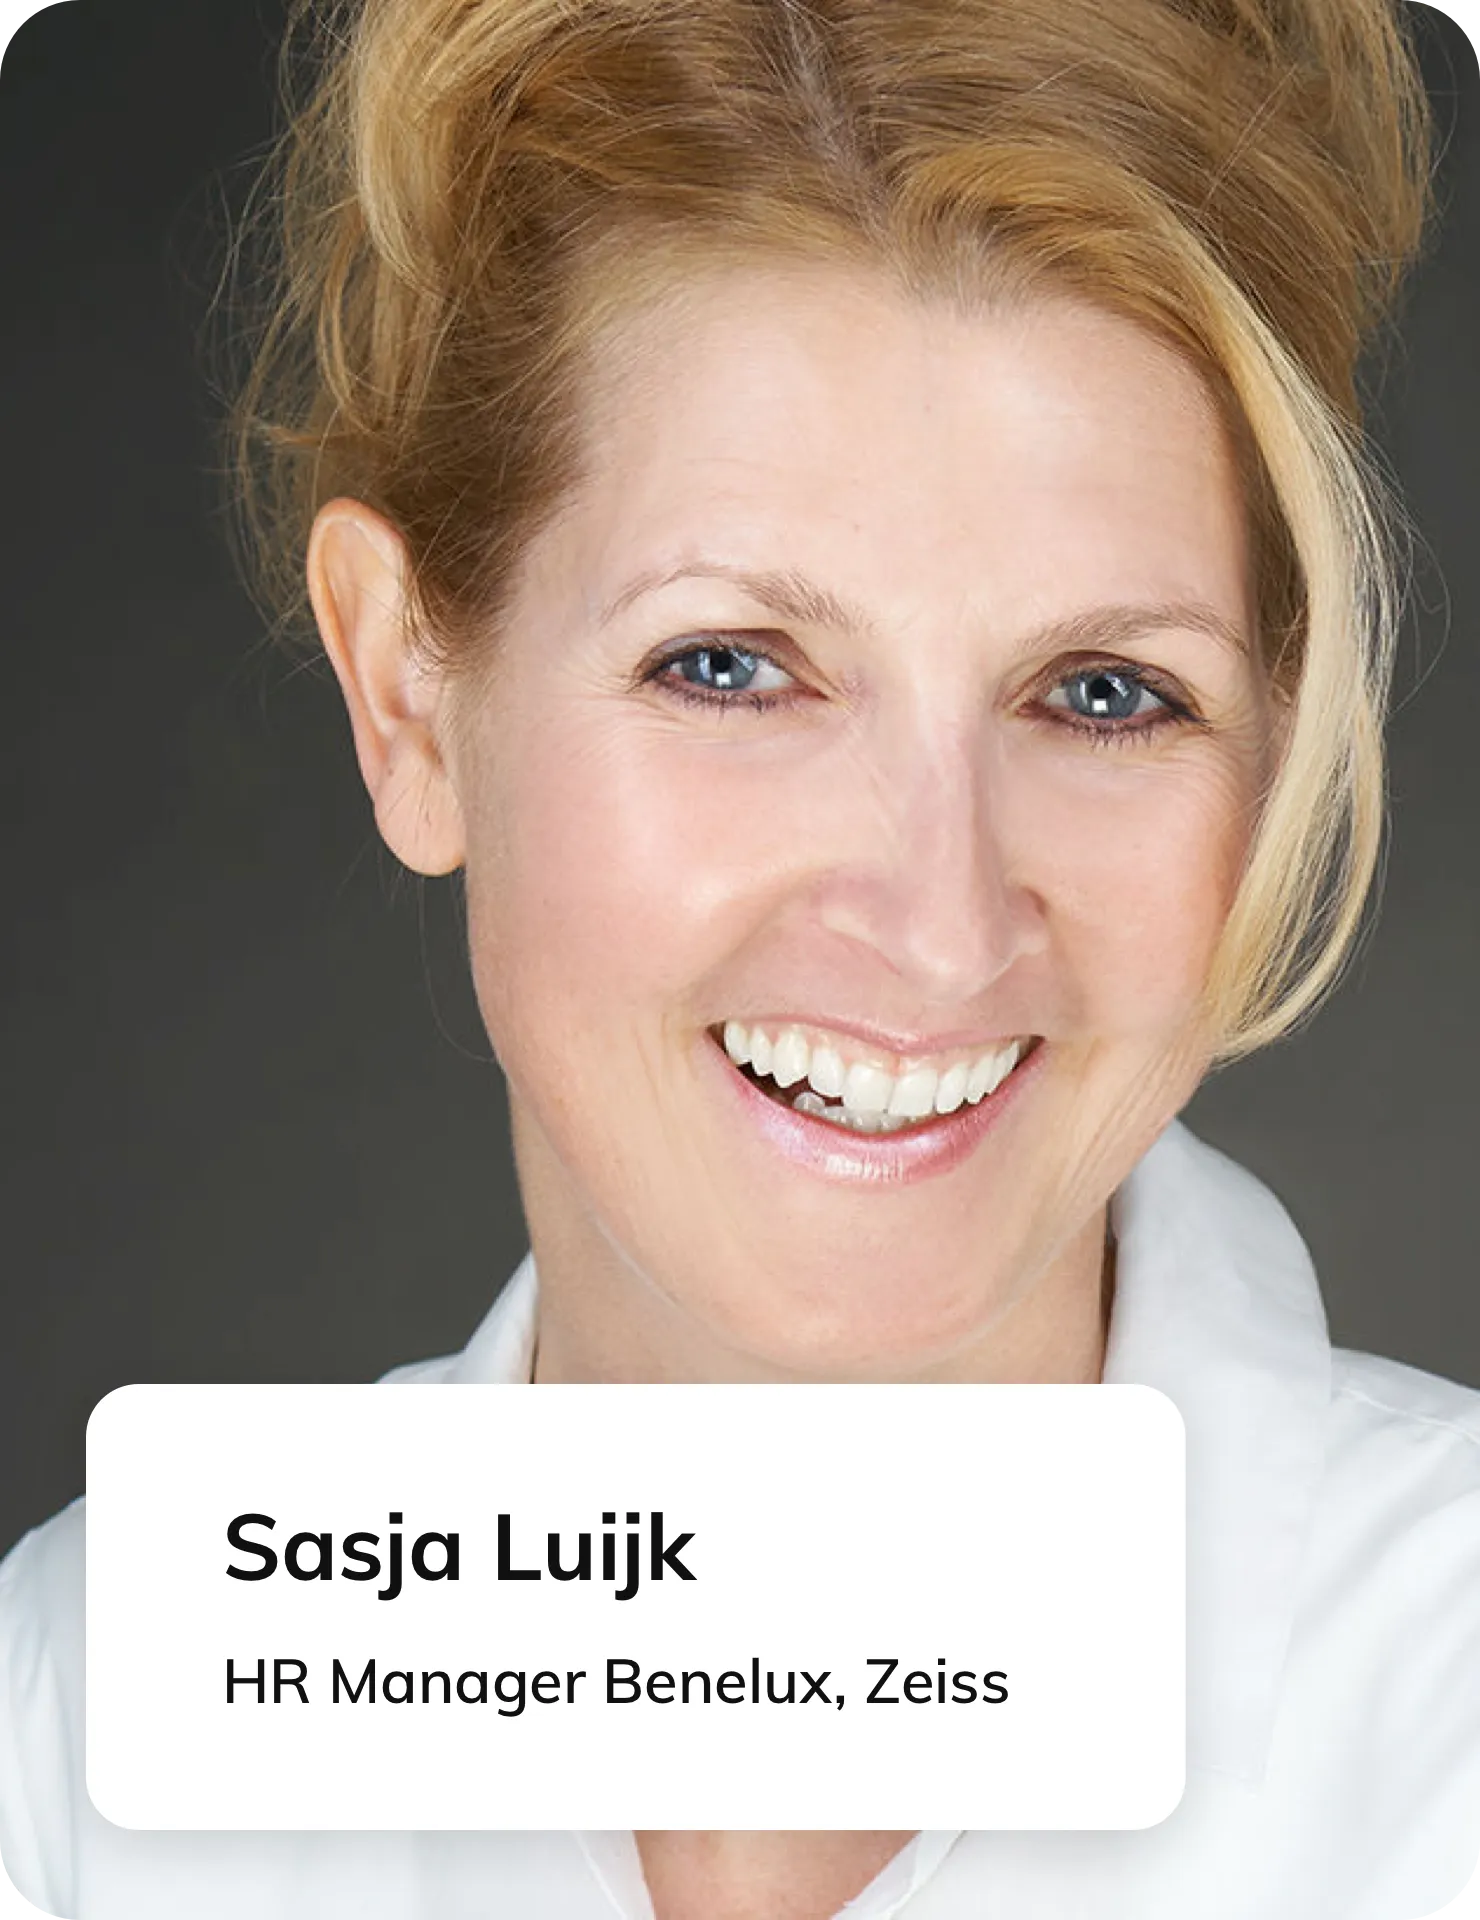 Sasja Luijk, HR Manager bij Zeiss